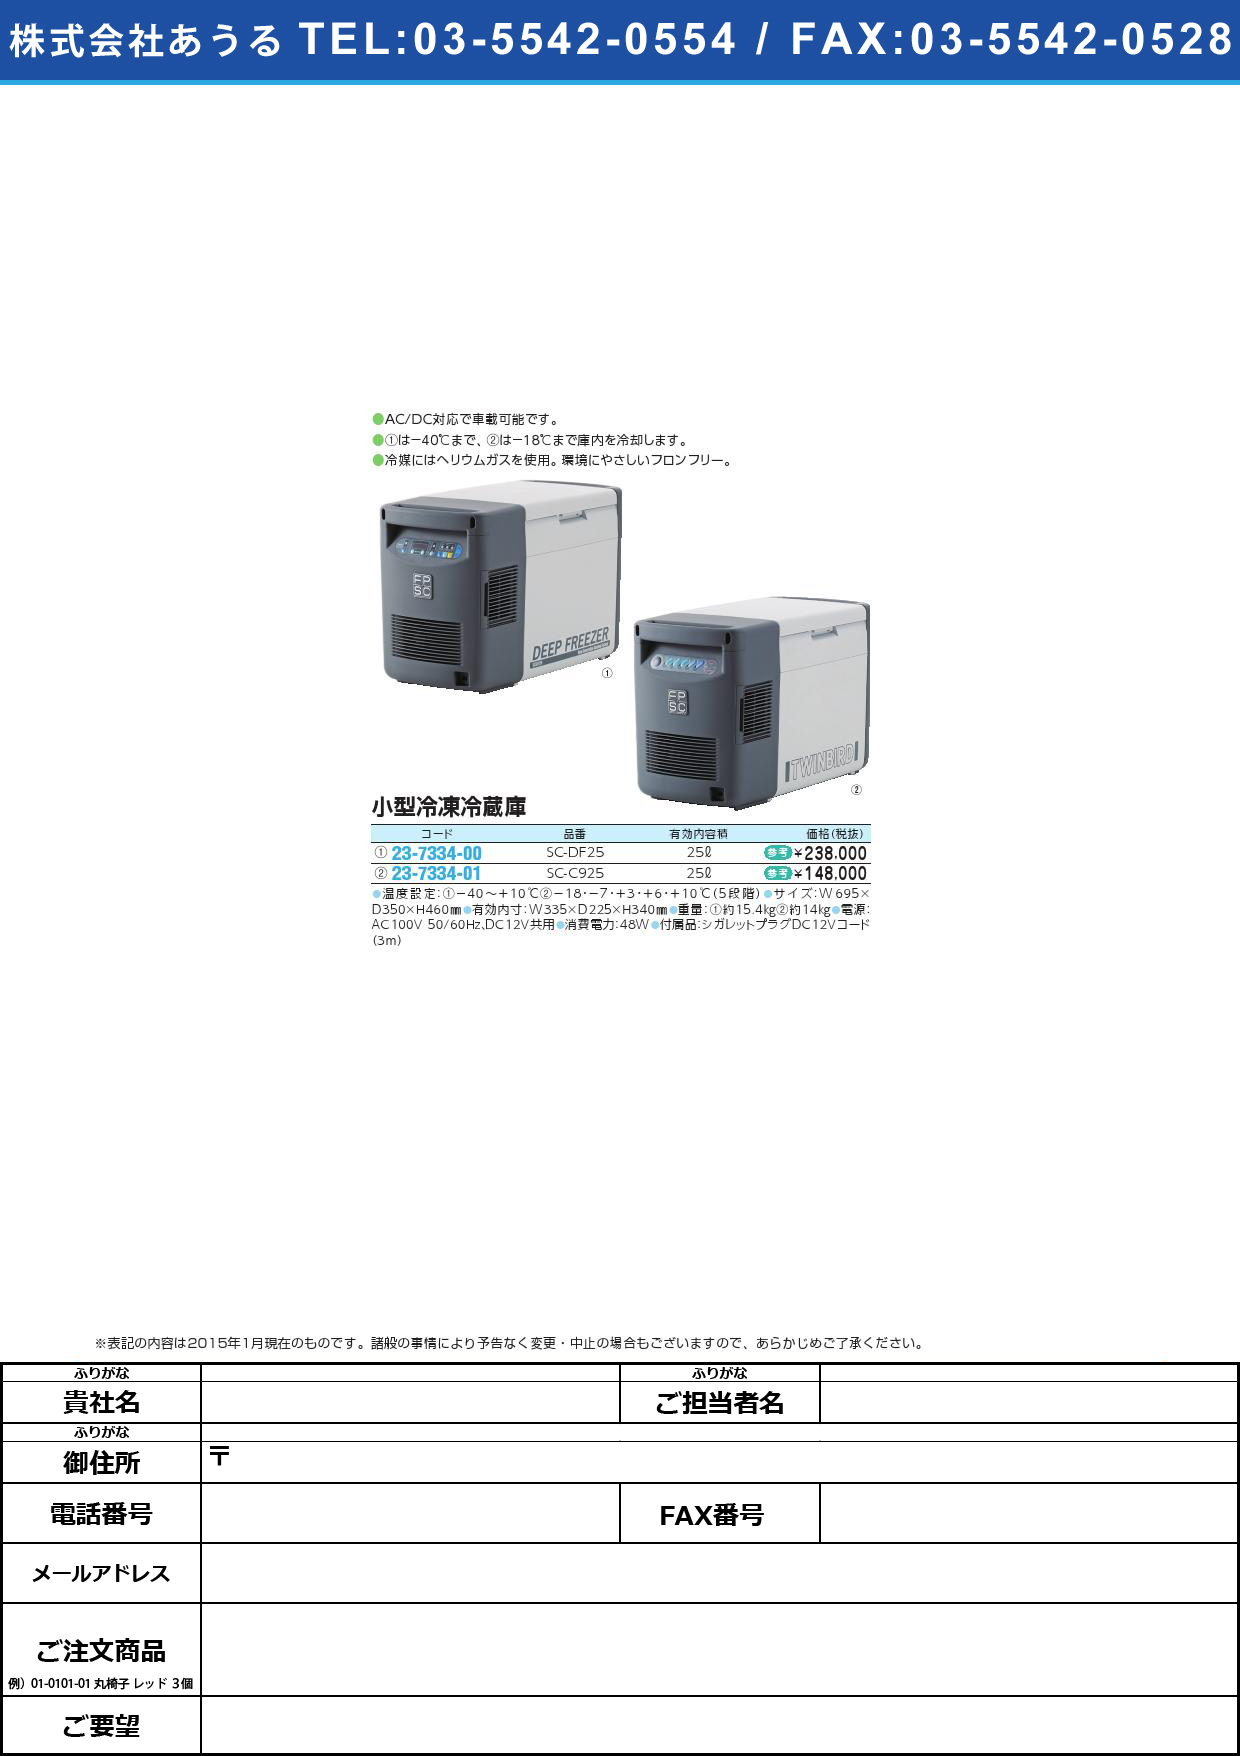 (23-7334-01)小型冷凍冷蔵庫（ポータブルフリーザー ｺｶﾞﾀﾚｲﾄｳﾚｲｿﾞｳｺ(23-7334-01)SC-C925(25L)【1台単位】【2015年カタログ商品】